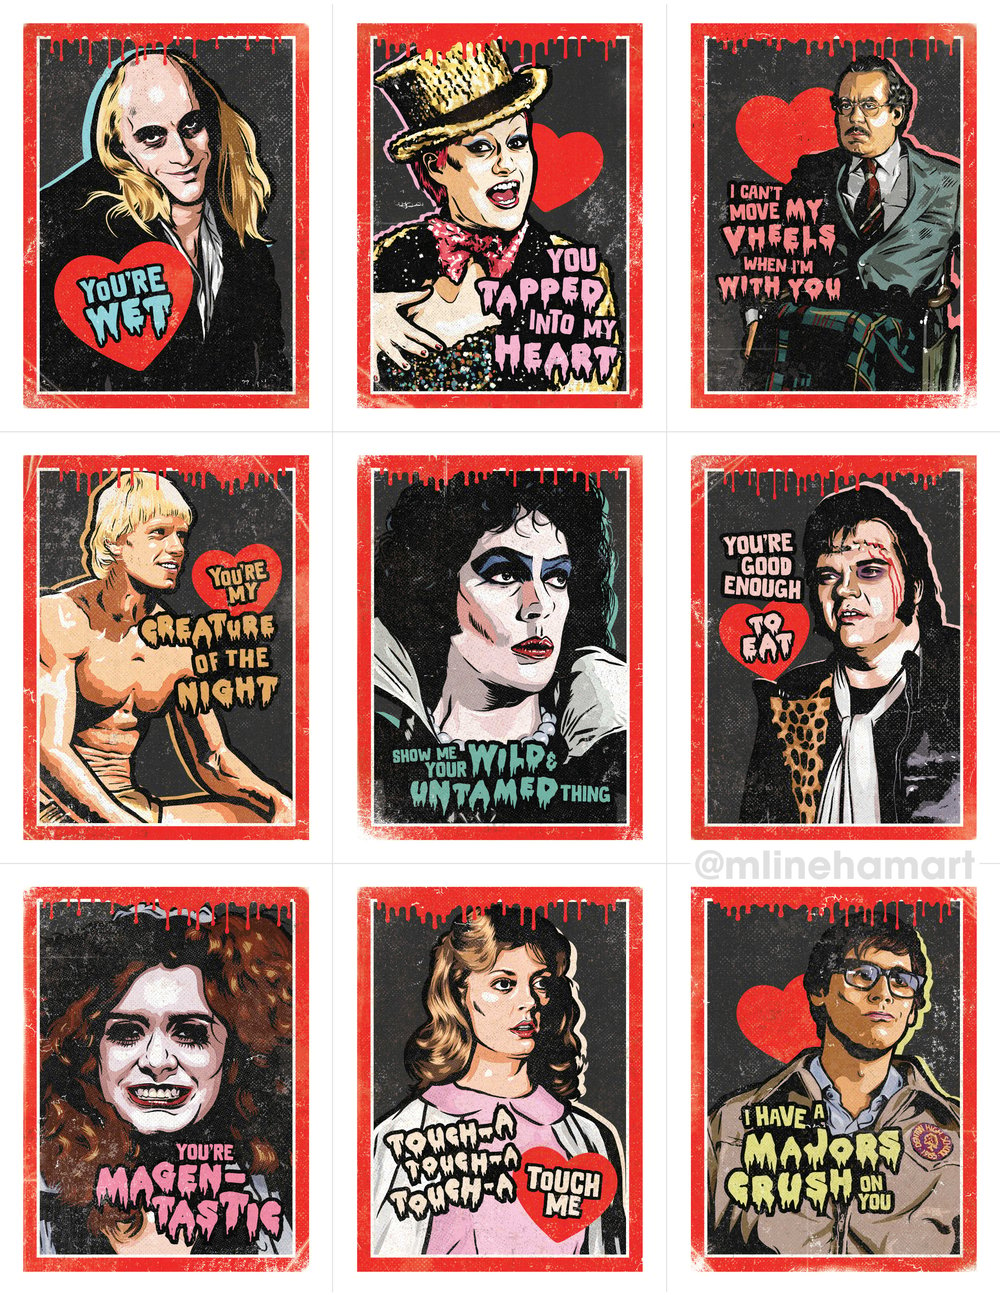 stranger-things-valentine-s-day-card-pack-m-lineham-art